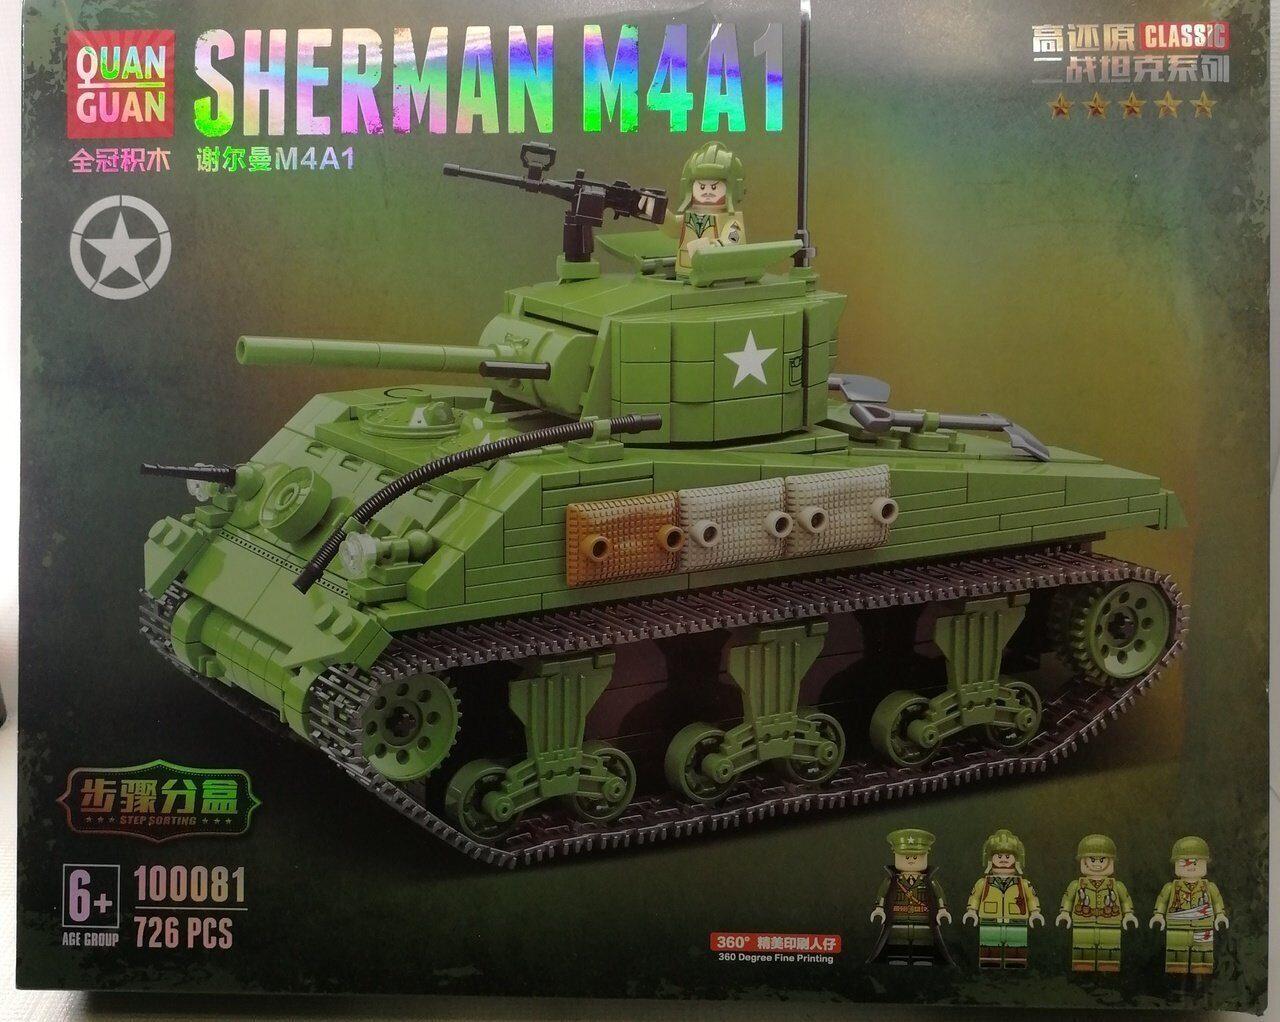 100081 Конструктор "Танк Шерман M4A1", 726 деталей, Quanguan, аналог LEGO (Лего)